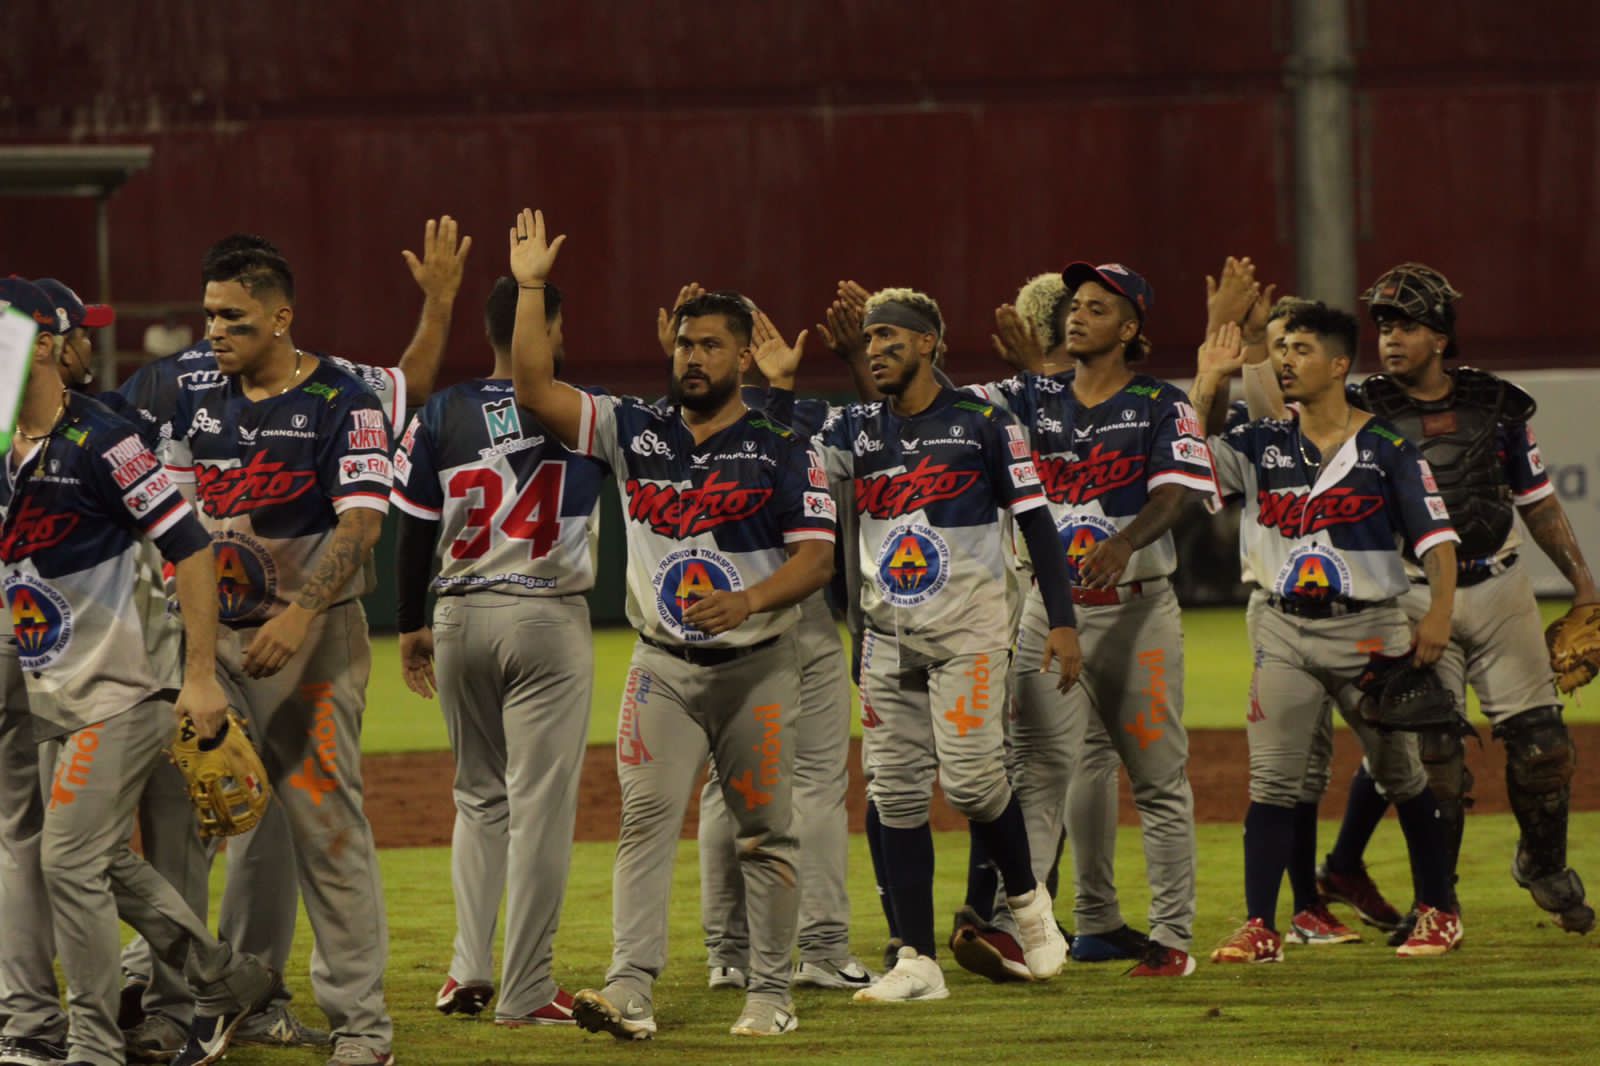 Jugadores de Panamá Metro festejan el triunfo contra Chiriquí. Foto: Fedebeis